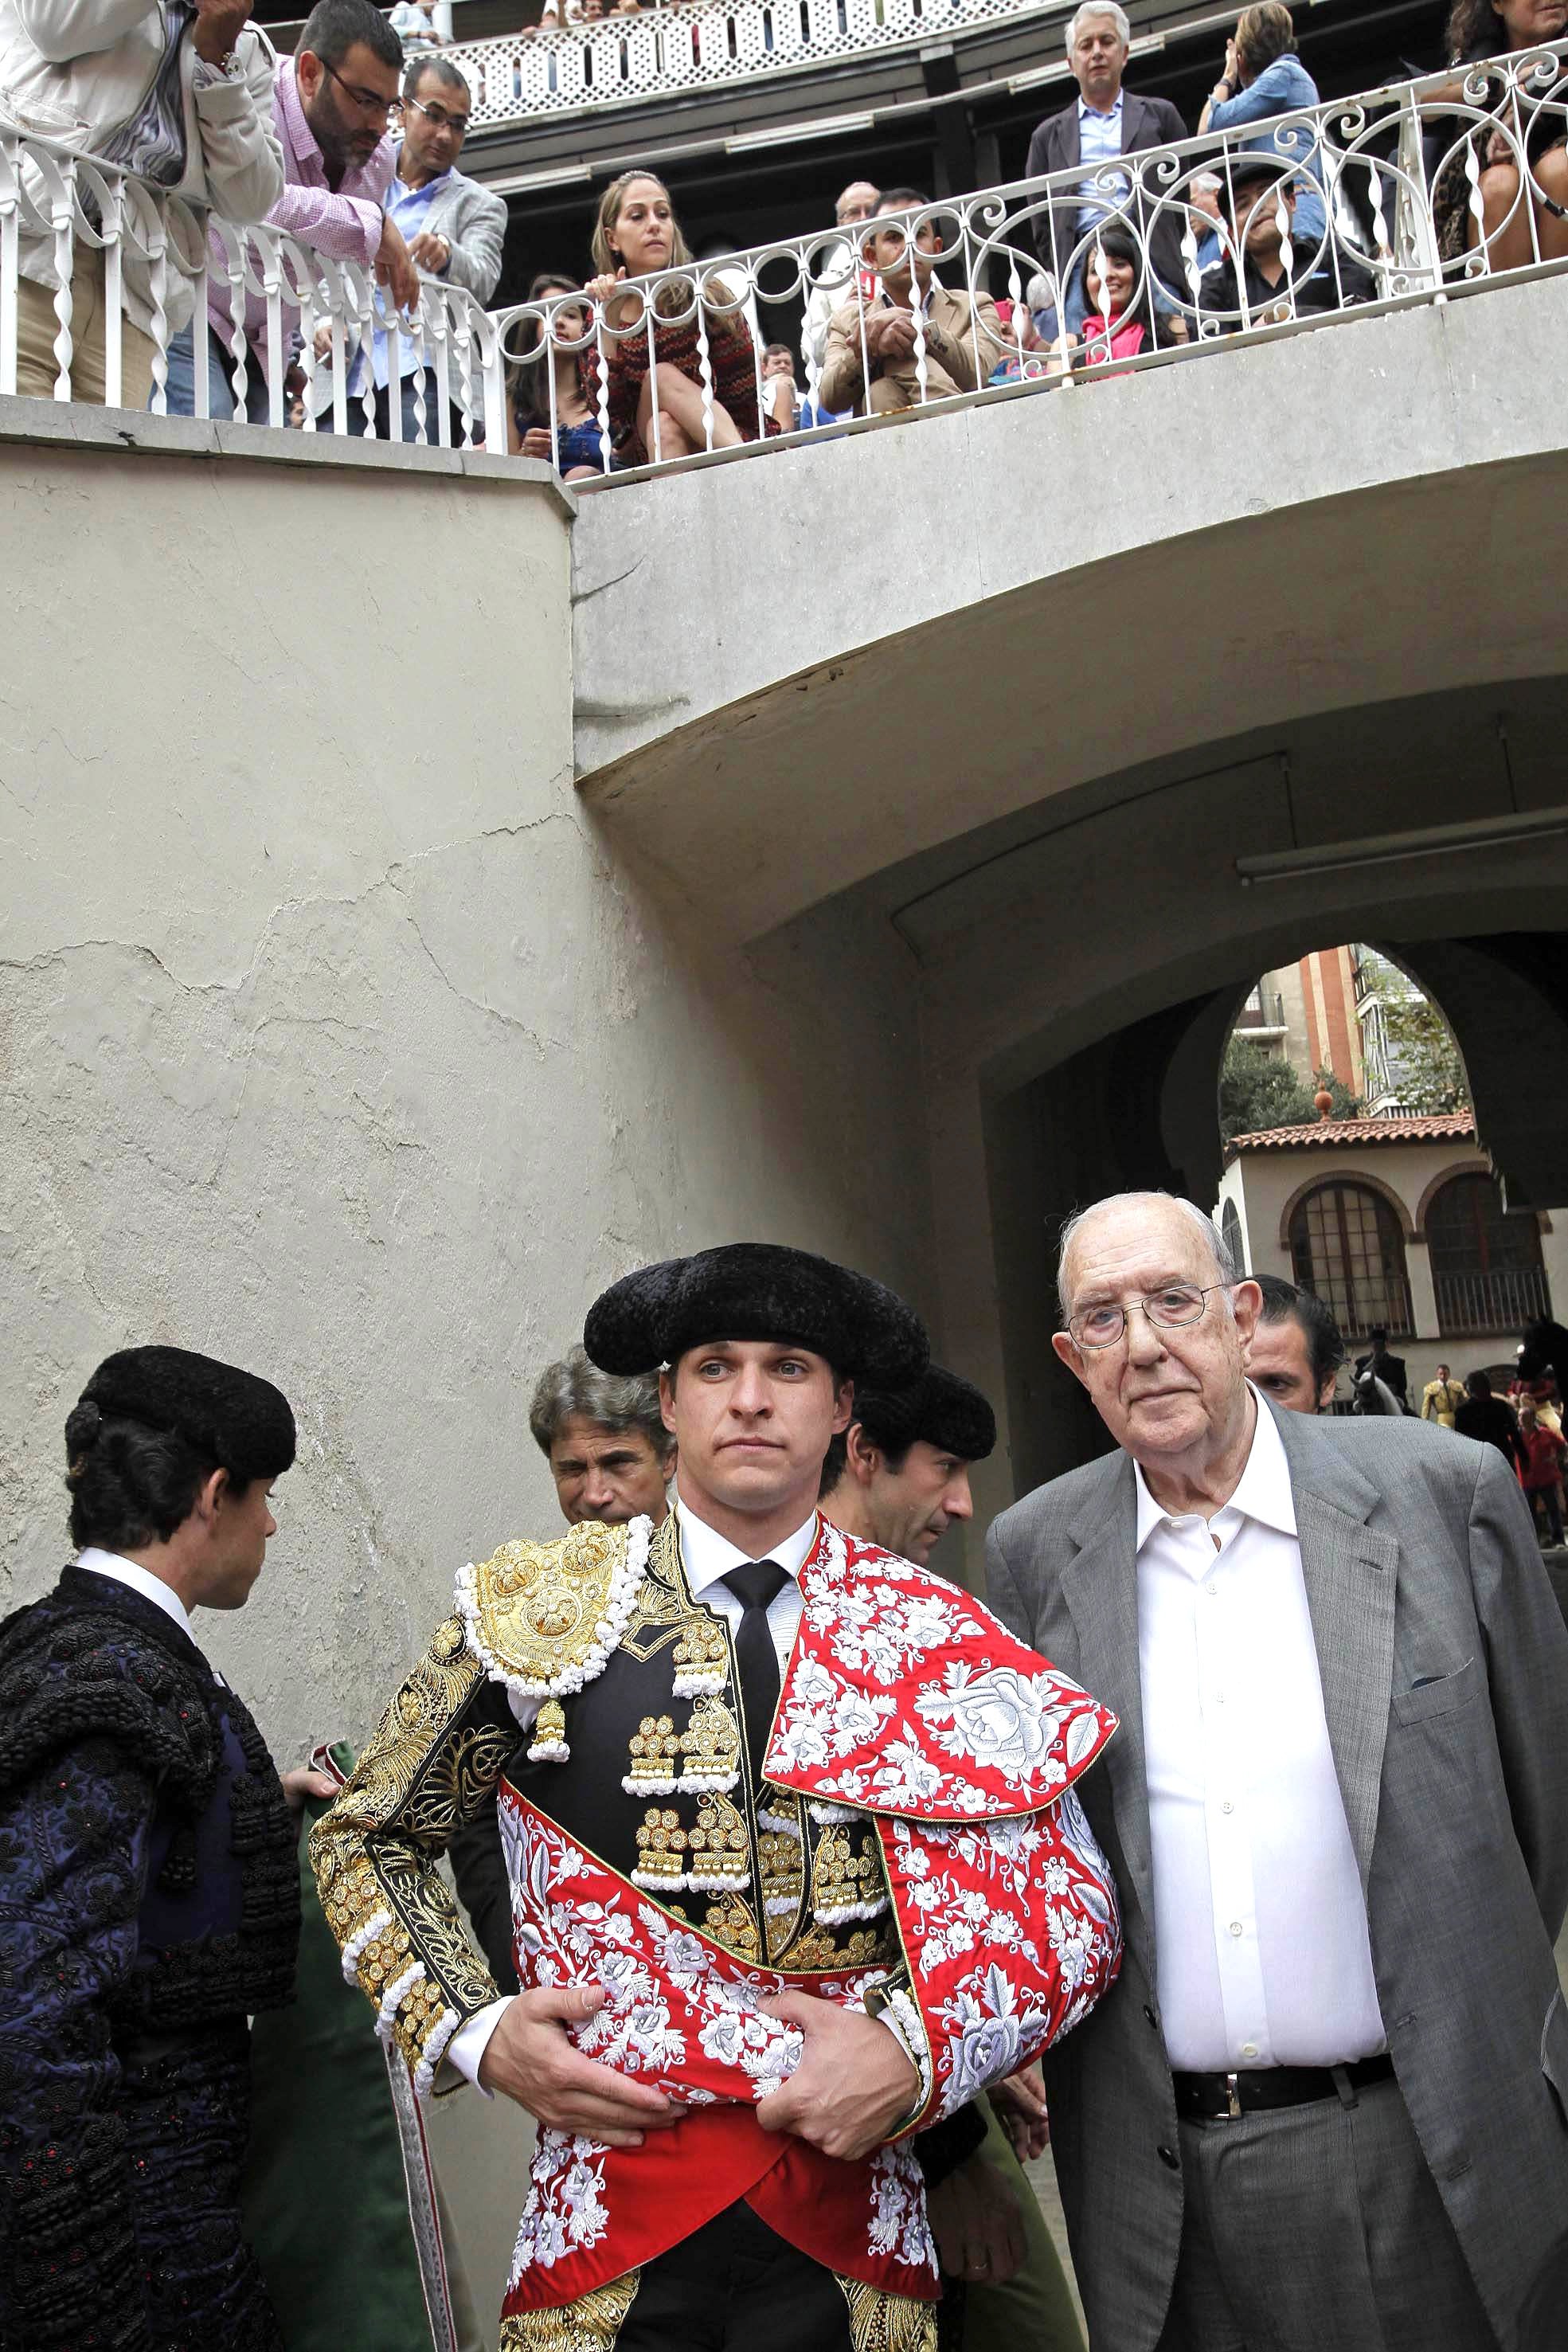 Muere el empresario taurino y de espectáculos Pere Balañá a los 93 años